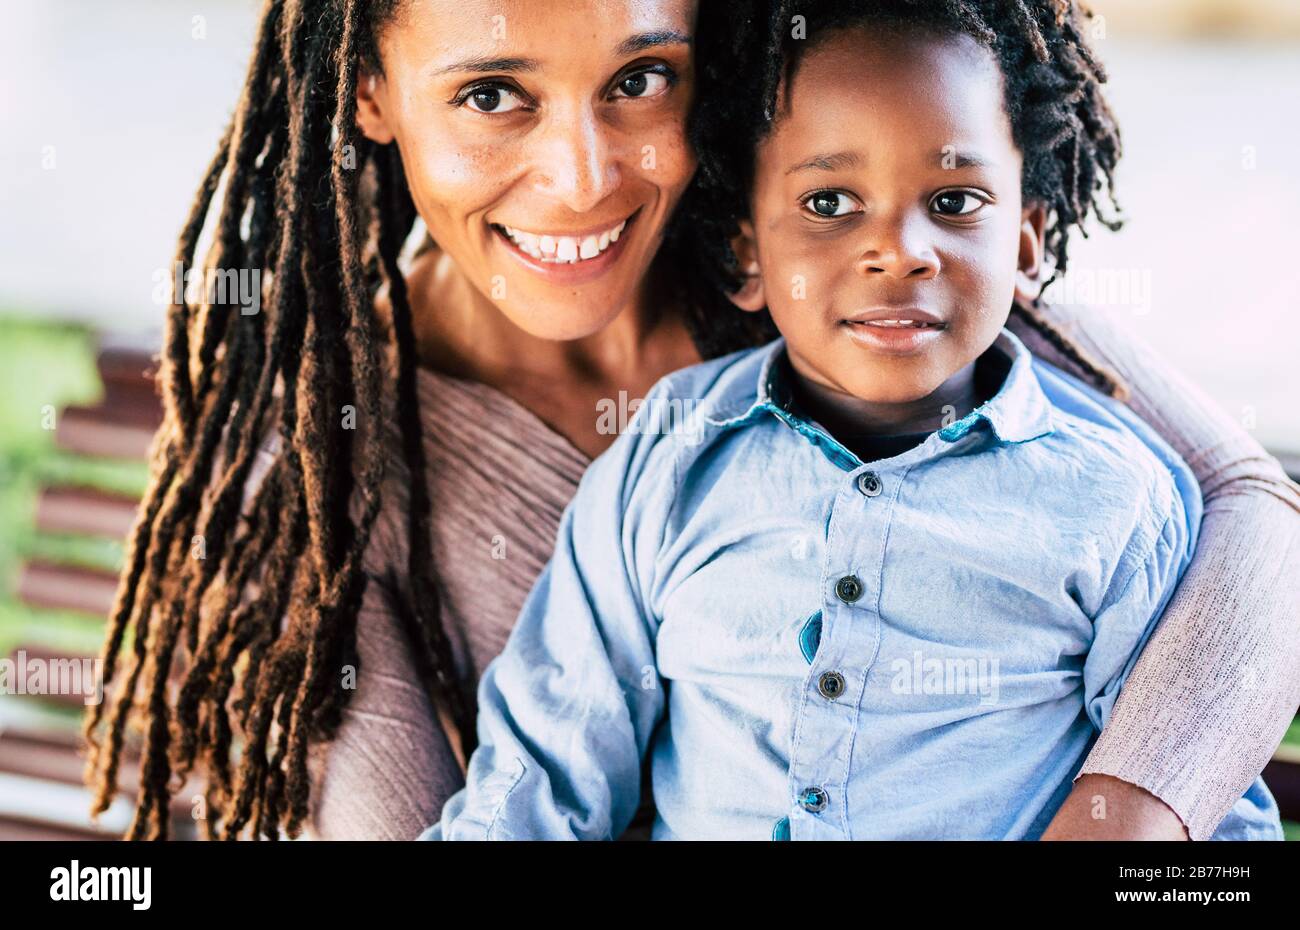 Bella diversità alternativa famiglia di nero africano persone - madre e figlio sorriso in un ritratto - trendy Dreadlocks capelli dredd per adulti e bambini Foto Stock